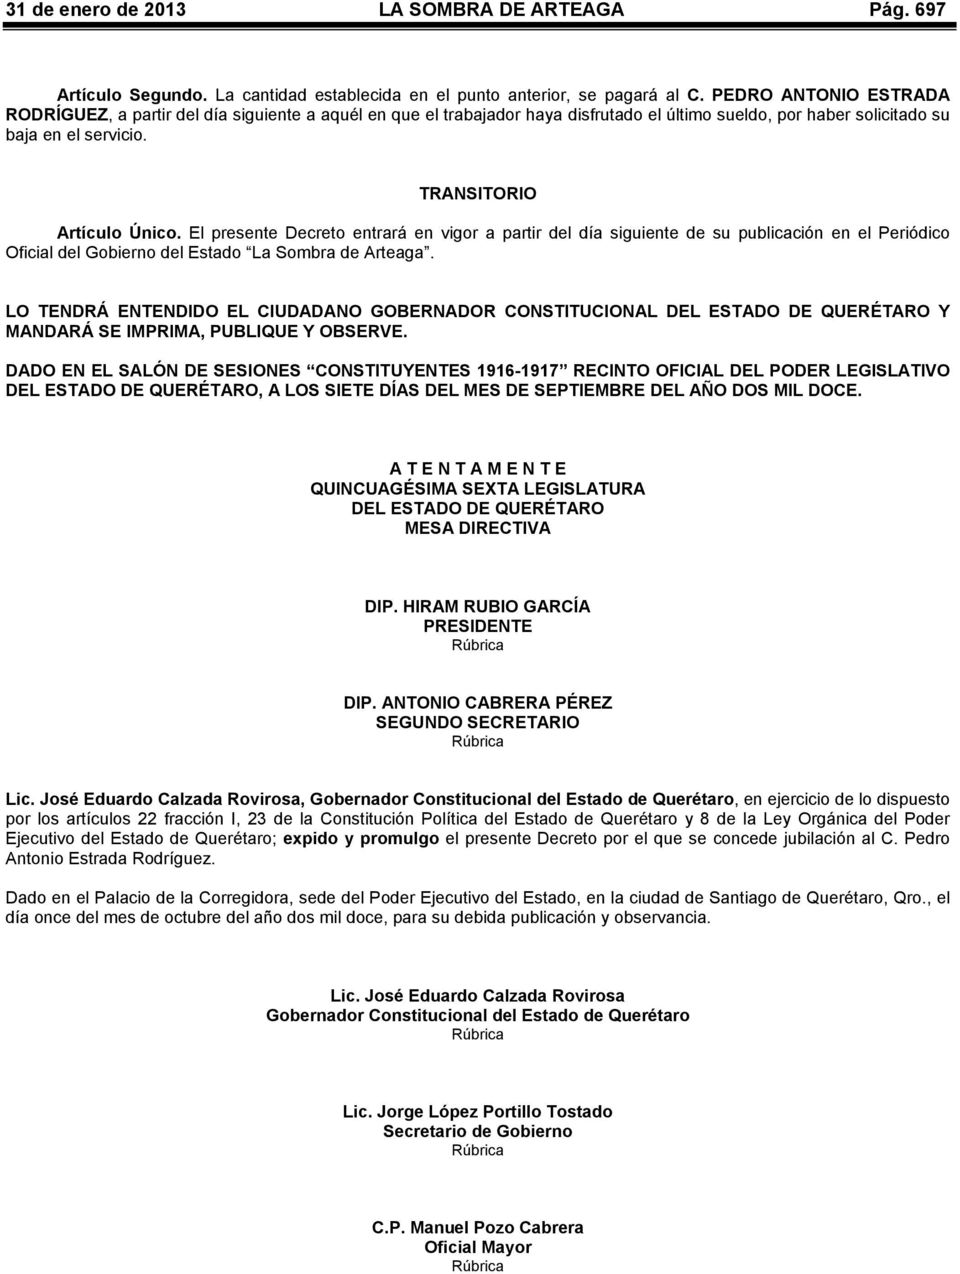 El presente Decreto entrará en vigor a partir del día siguiente de su publicación en el Periódico Oficial del Gobierno del Estado La Sombra de Arteaga.